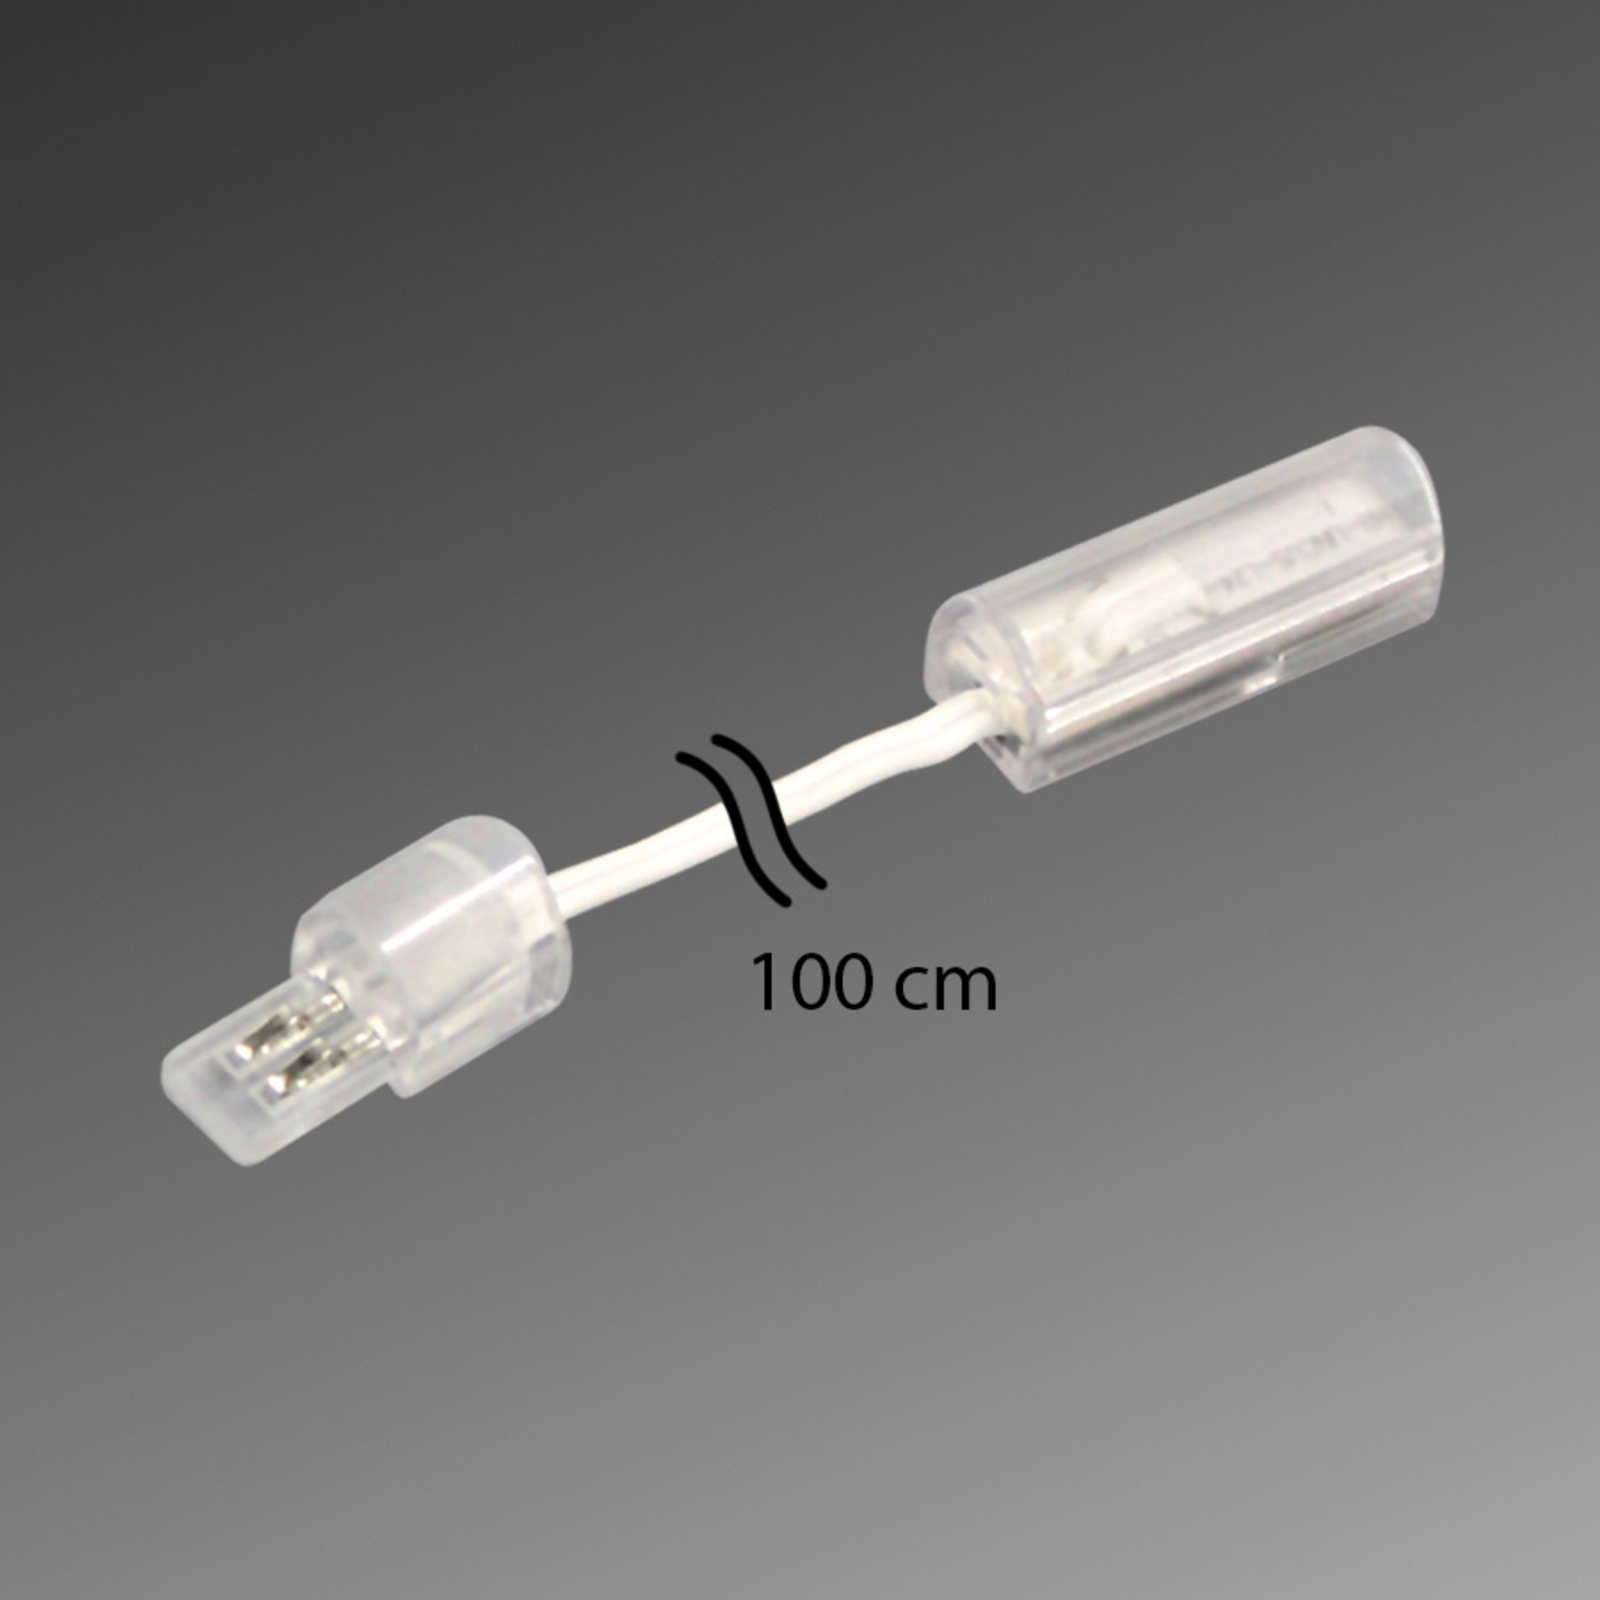 Aansluitleiding voor LED STICK 2, 100 cm